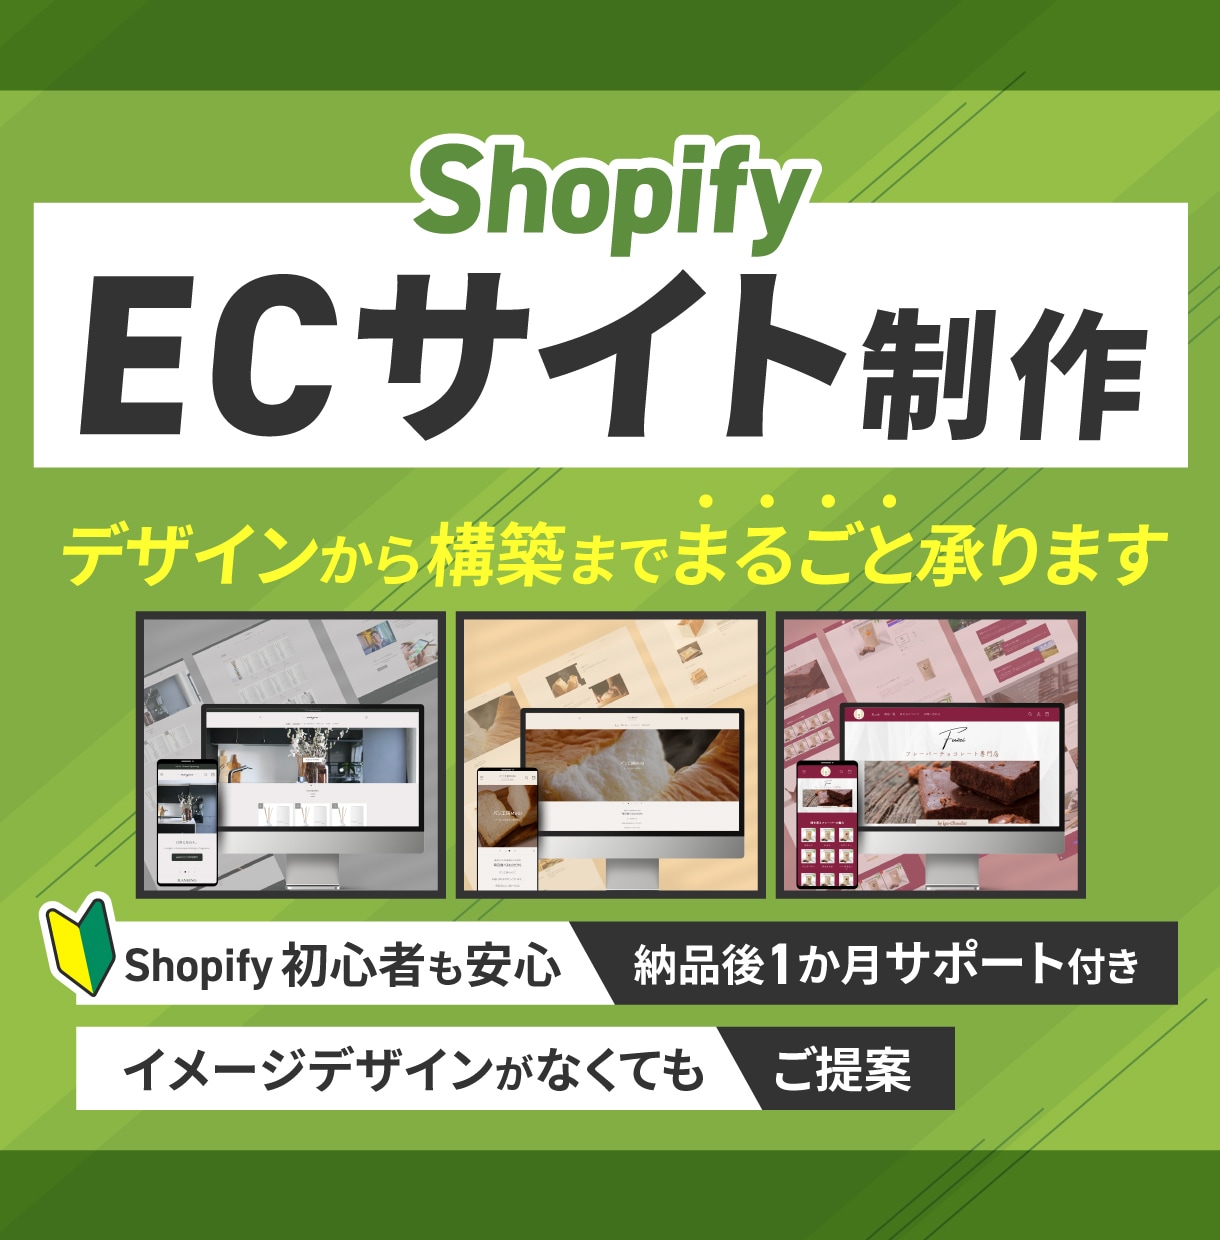 ShopifyでECサイトを制作します いつでもお客様の要望を第一に考え、ECサイトを提供します。 イメージ1